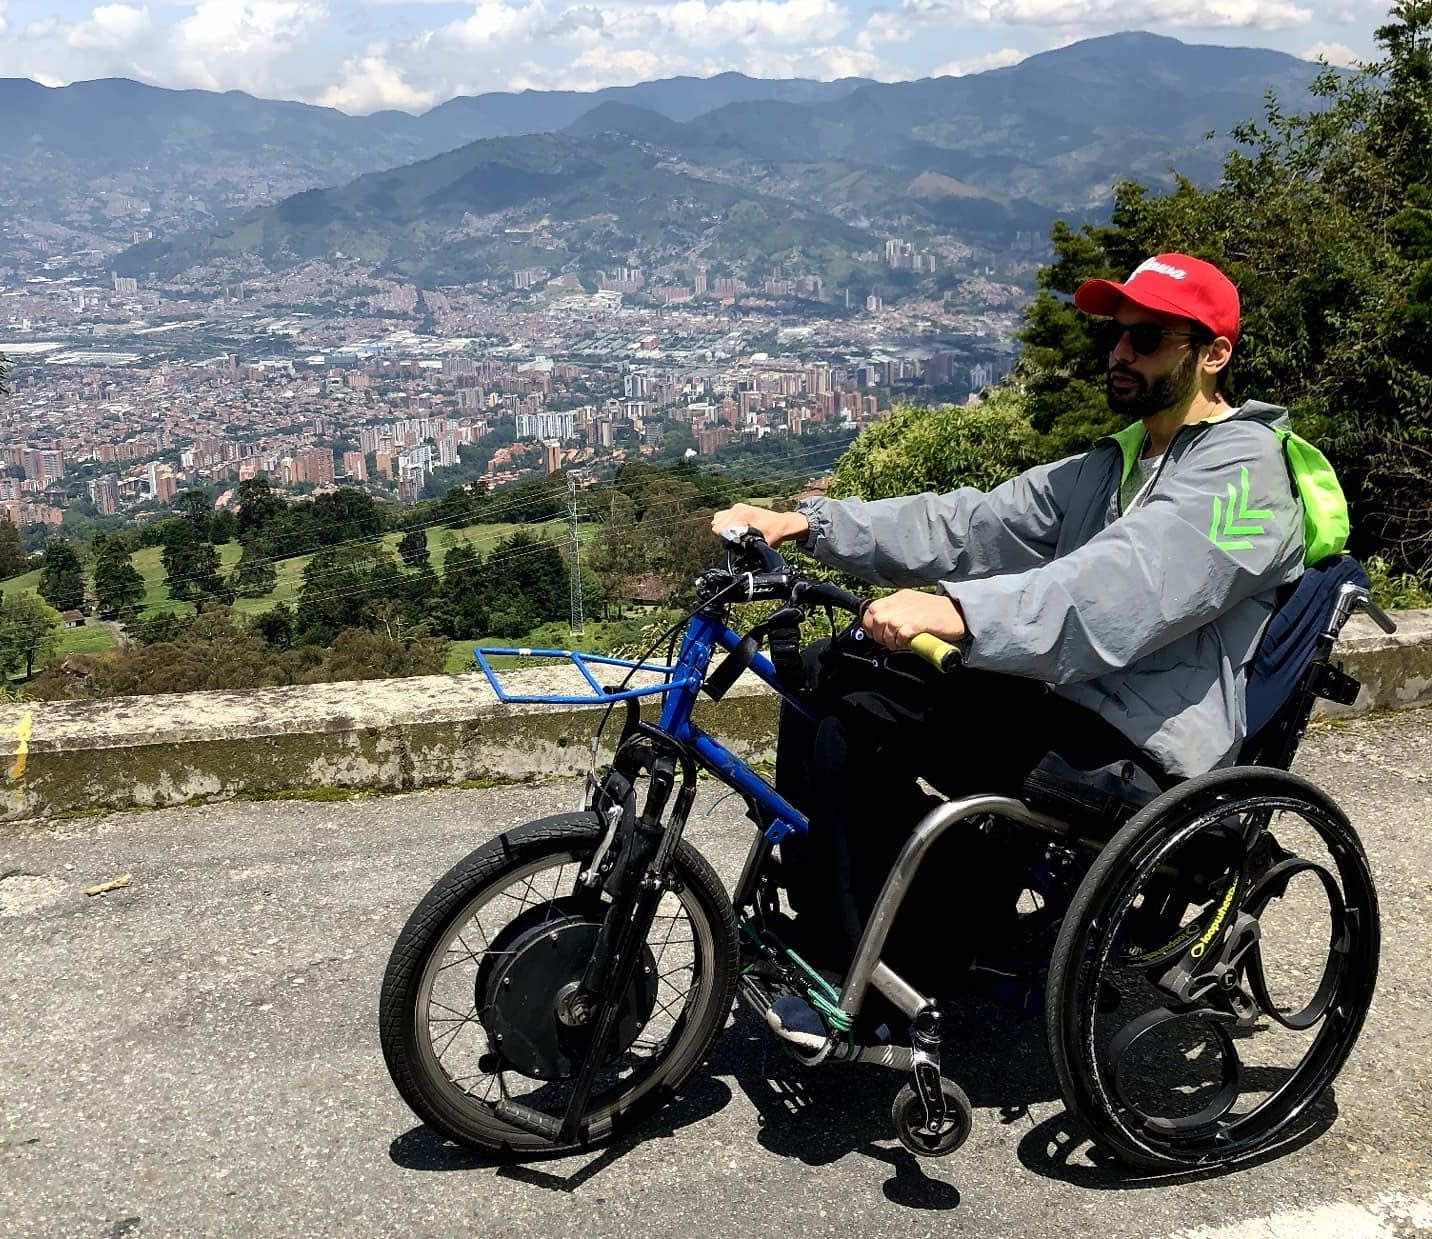 Φωτογραφία ανθρώπου που οδηγά το ηλεκτρικό αναπηρικό αμαξίδιο/μοτοσυκλέτα που έφτιαξε